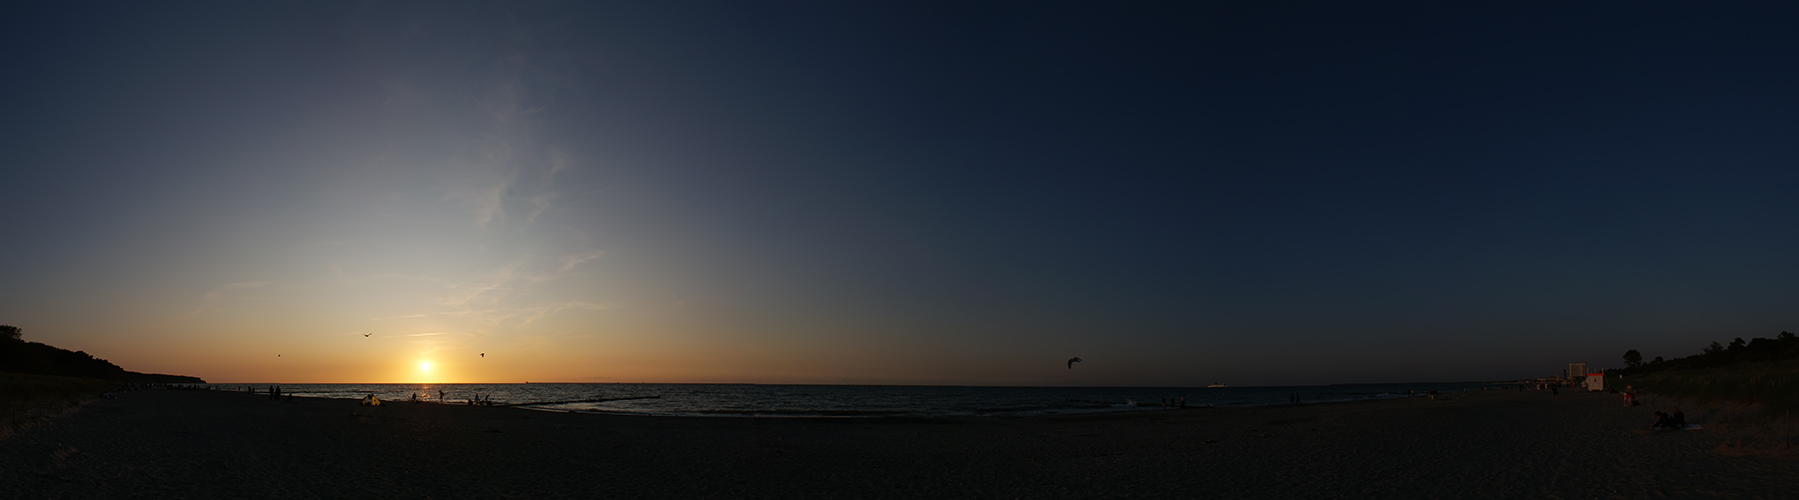 Sonnenuntergang am Strand von Warnemünde